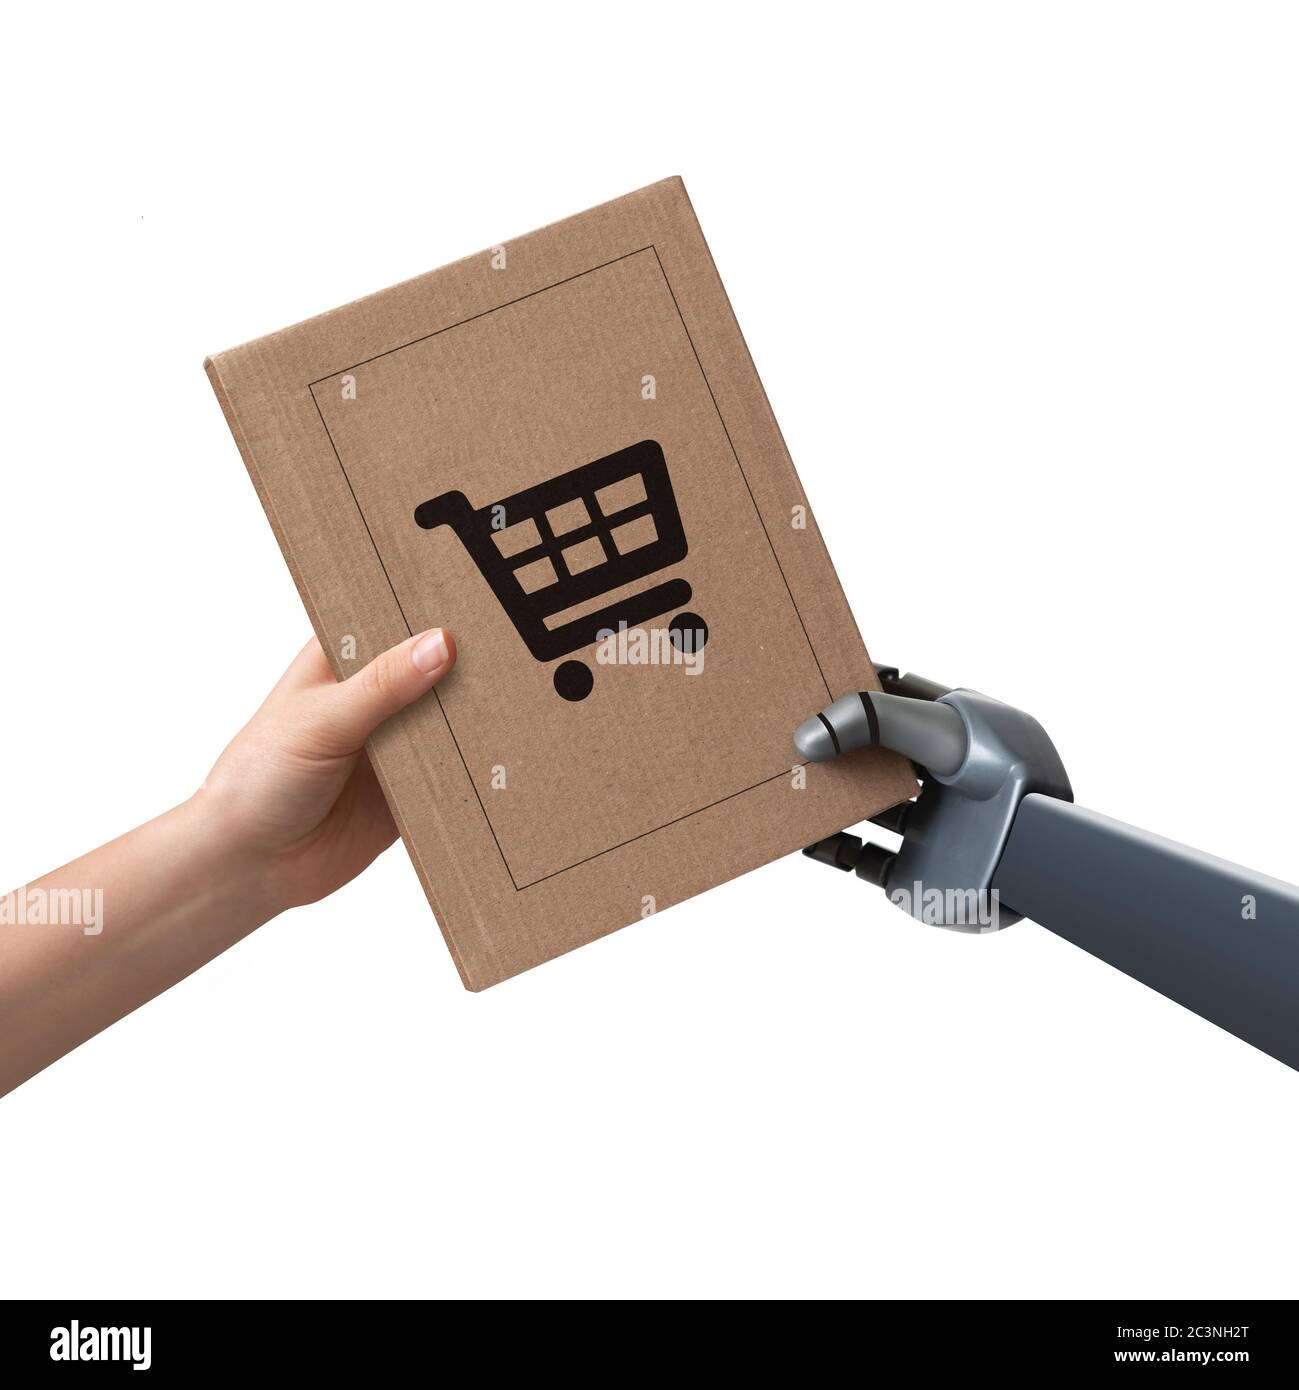 Le robot transmet le paquet à la personne. Livraison automatique sans personnel Banque D'Images